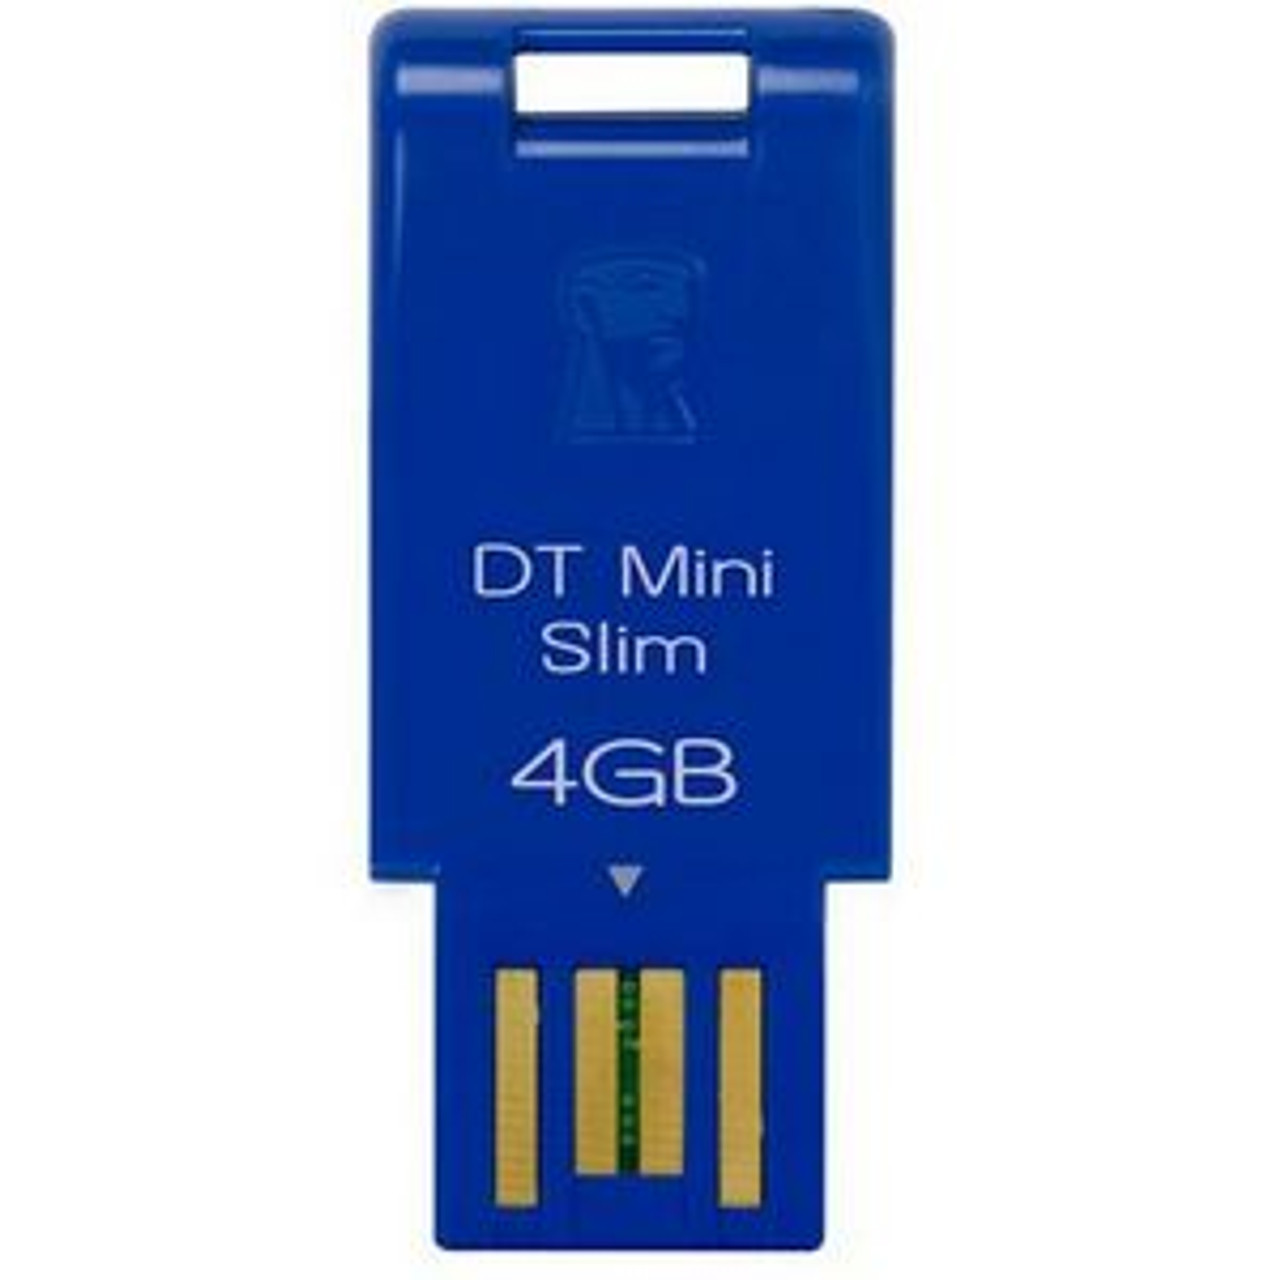 DTMSB/4GB - Kingston 4GB DataTraveler Mini Slim USB Flash Drive - 4 GB - USB - External